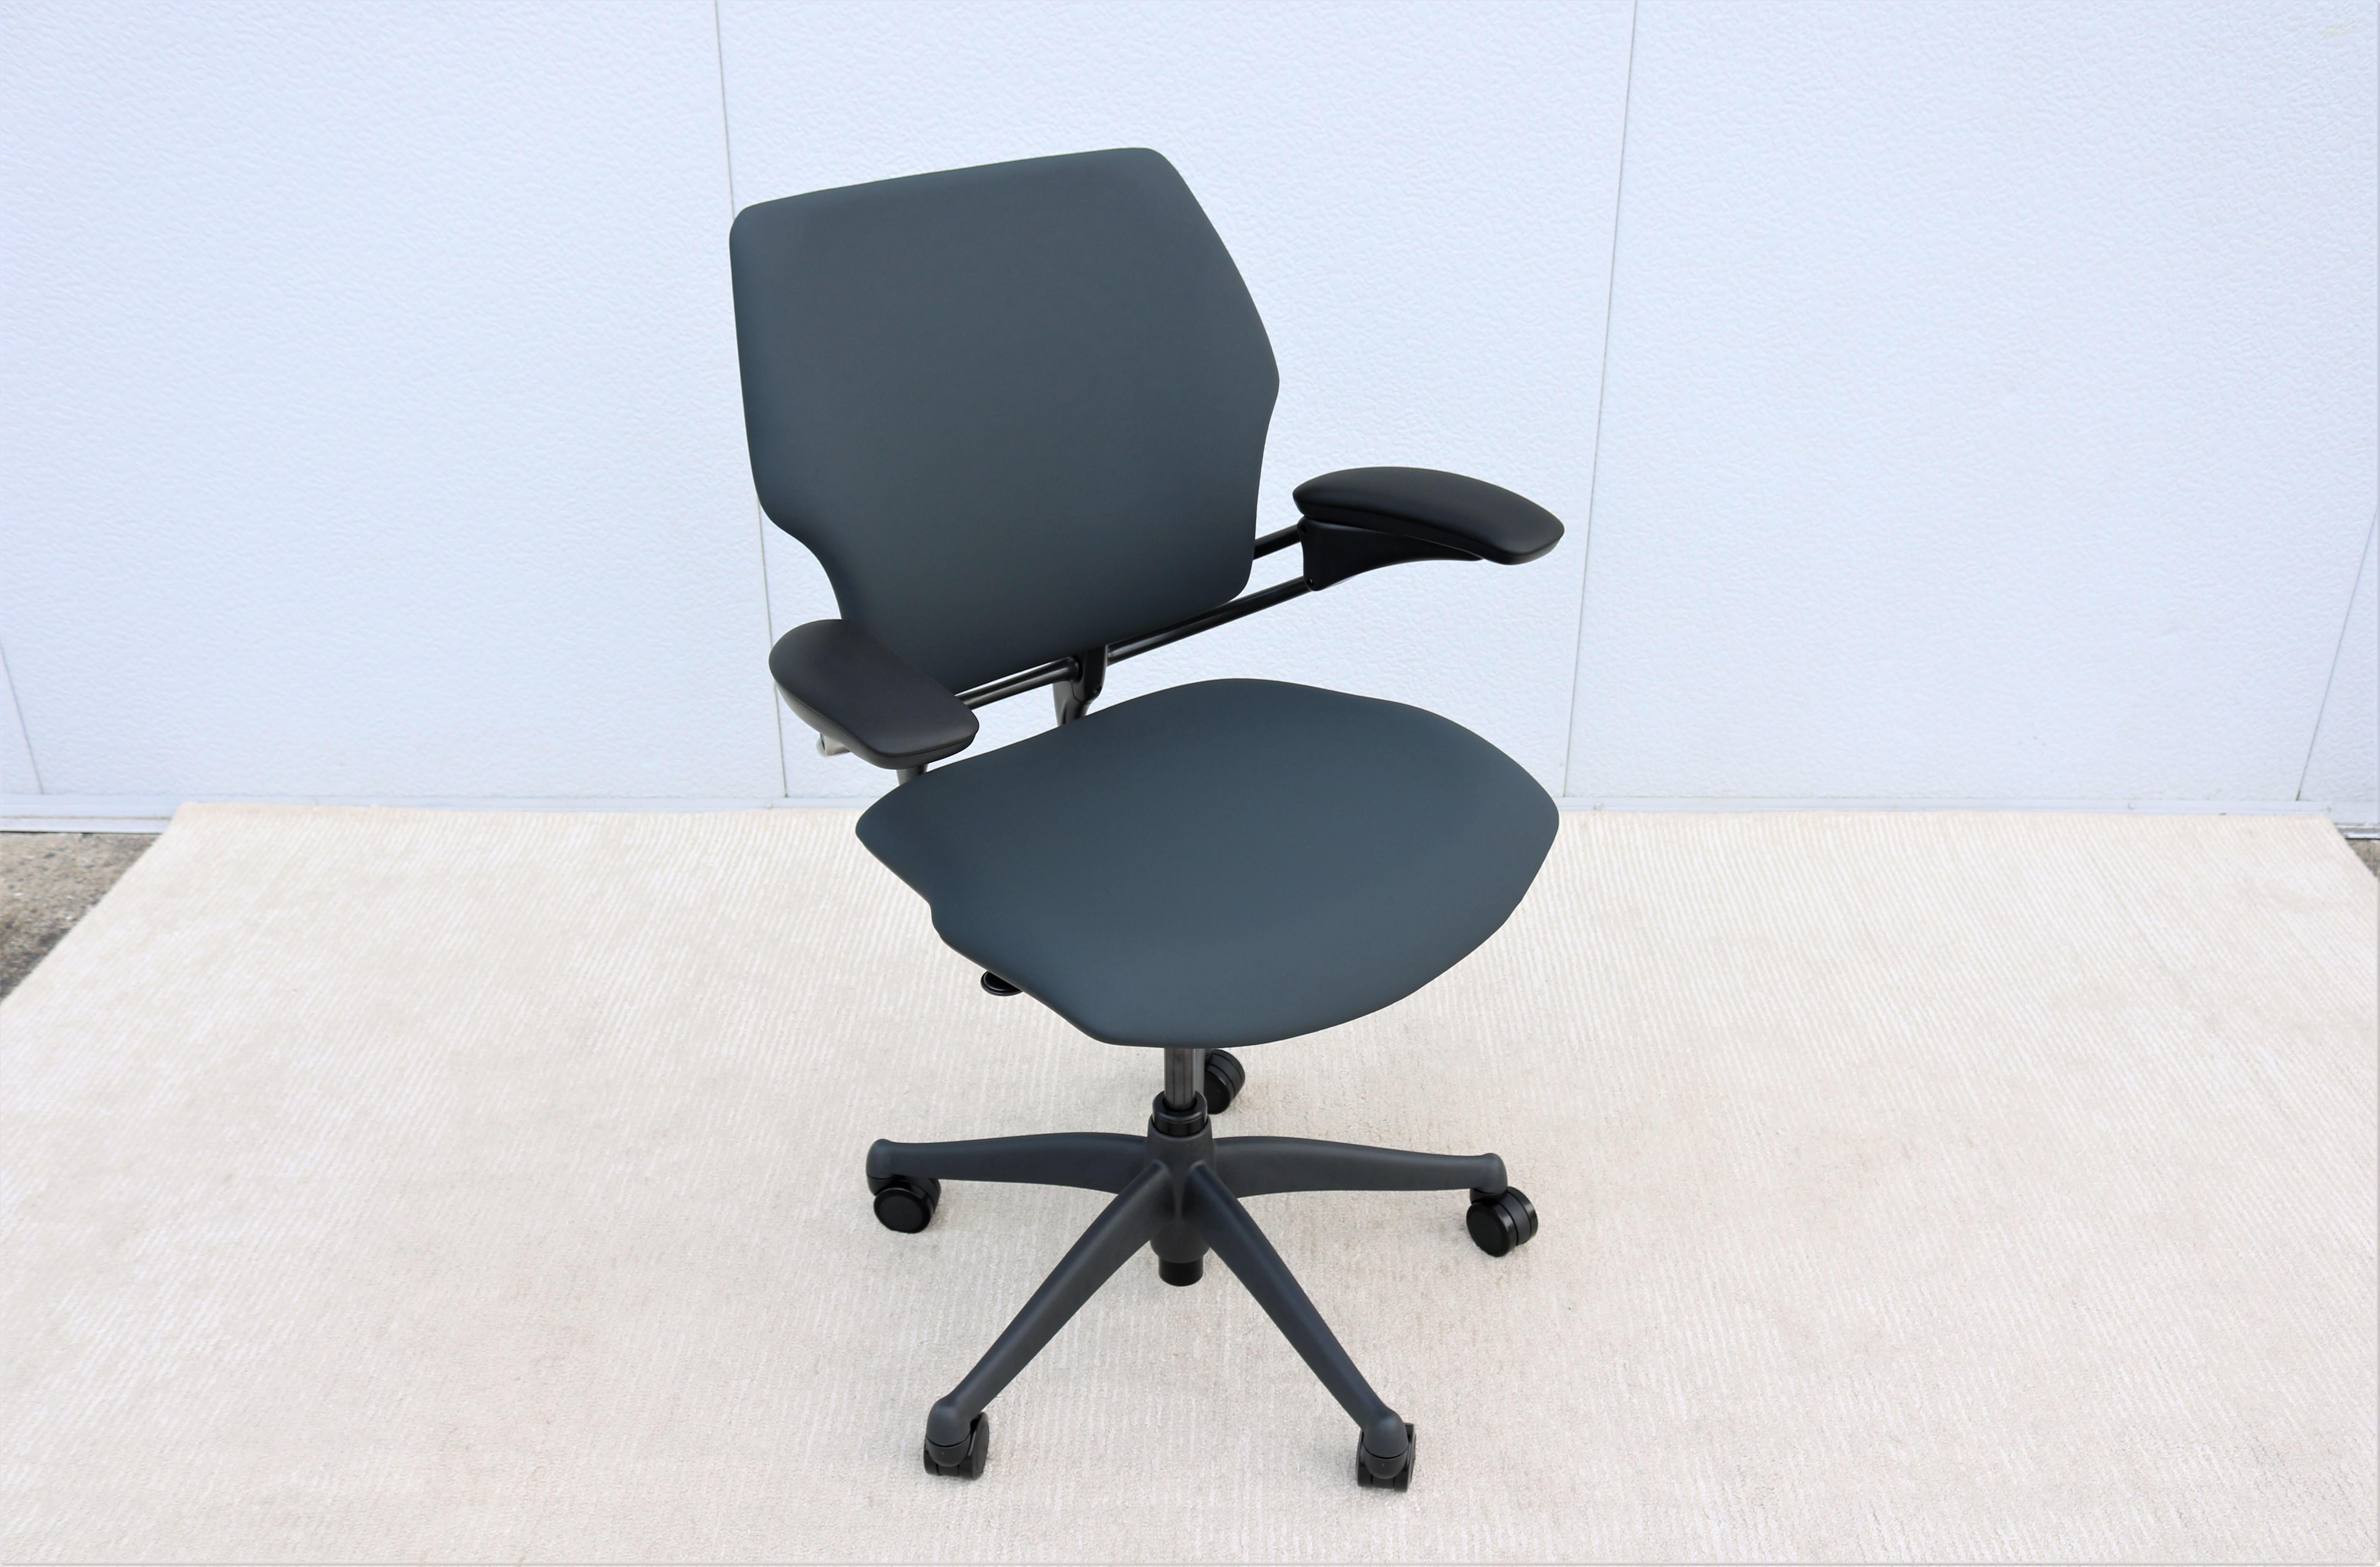 Lauréate de plus de 10 grands prix de design à ce jour, la chaise freedom a révolutionné la façon dont les gens s'assoient. 
Il s'adapte automatiquement à chaque utilisateur, conçu pour éliminer le besoin de commandes manuelles.
Avec son mécanisme